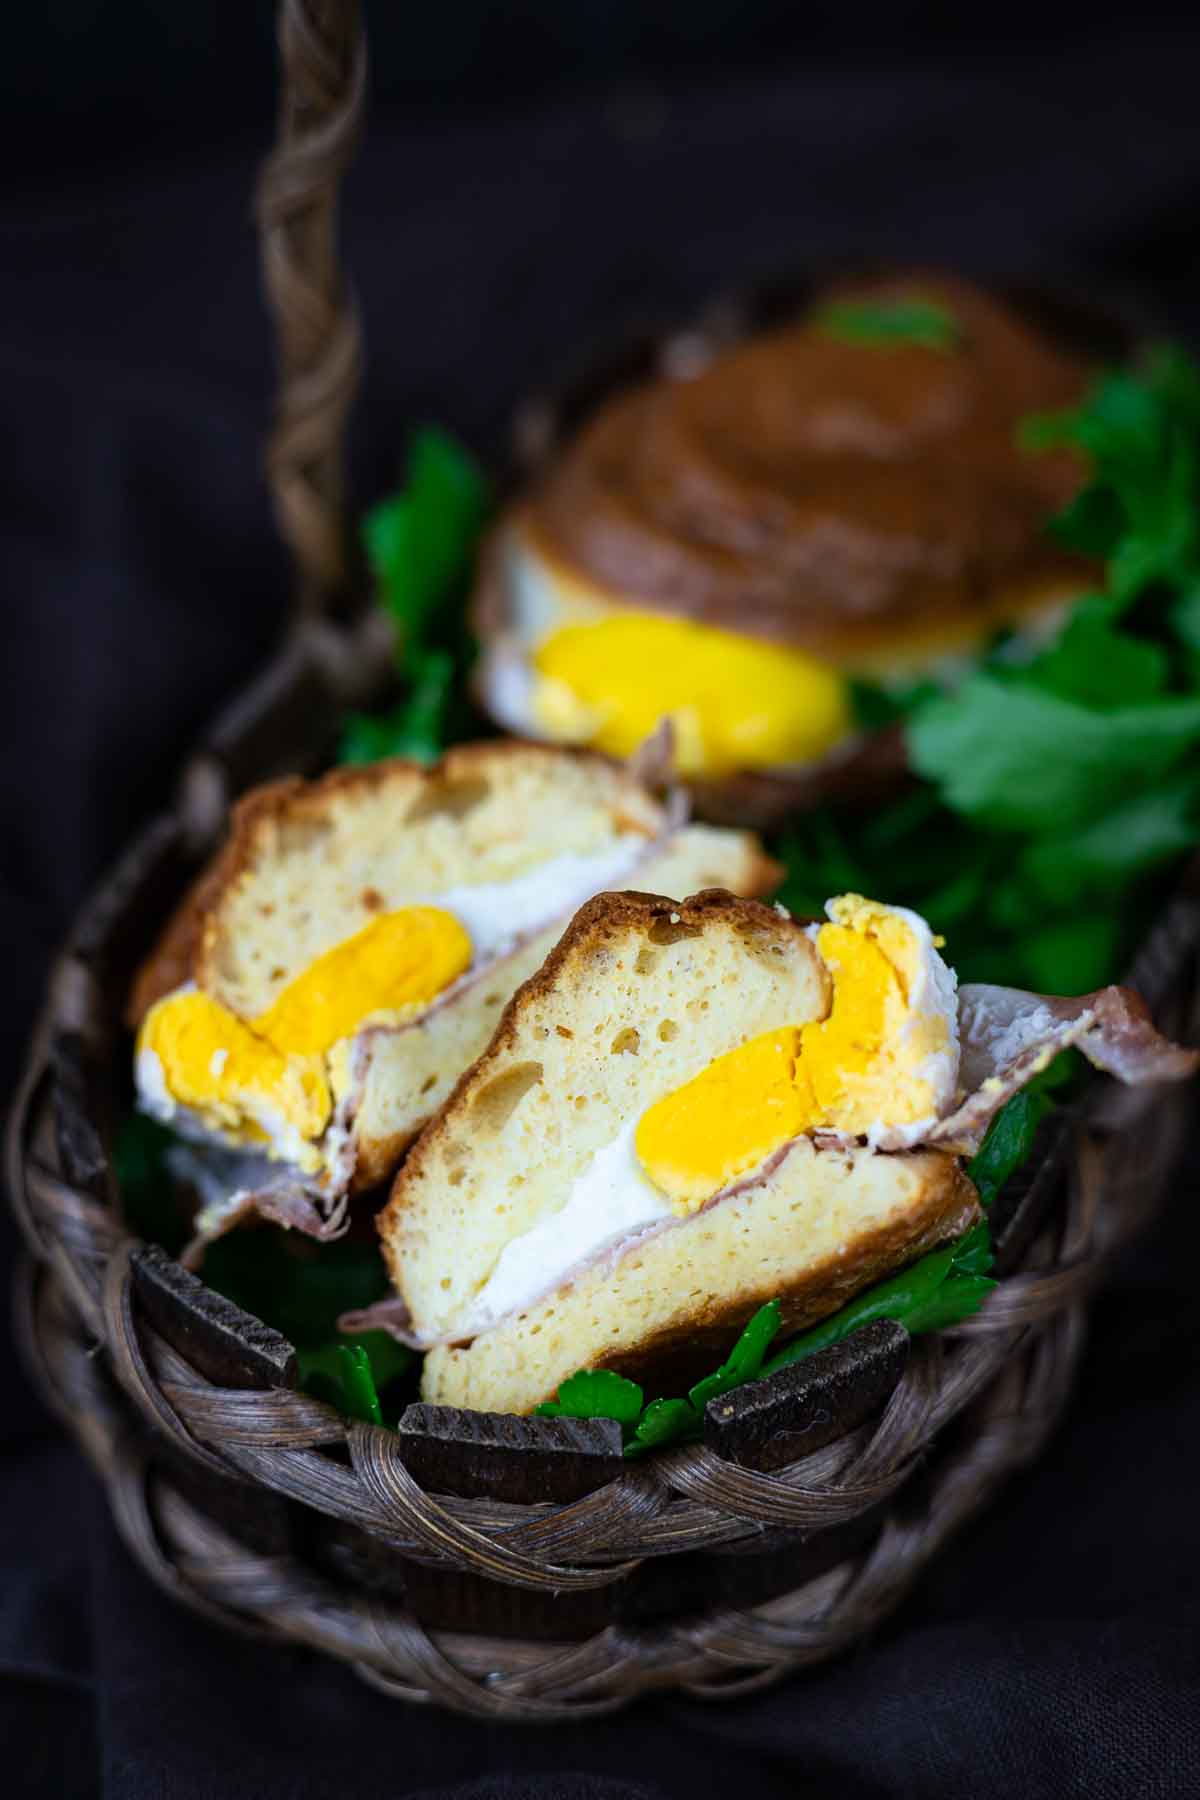 Keto Breakfast Sandwich in a basket.